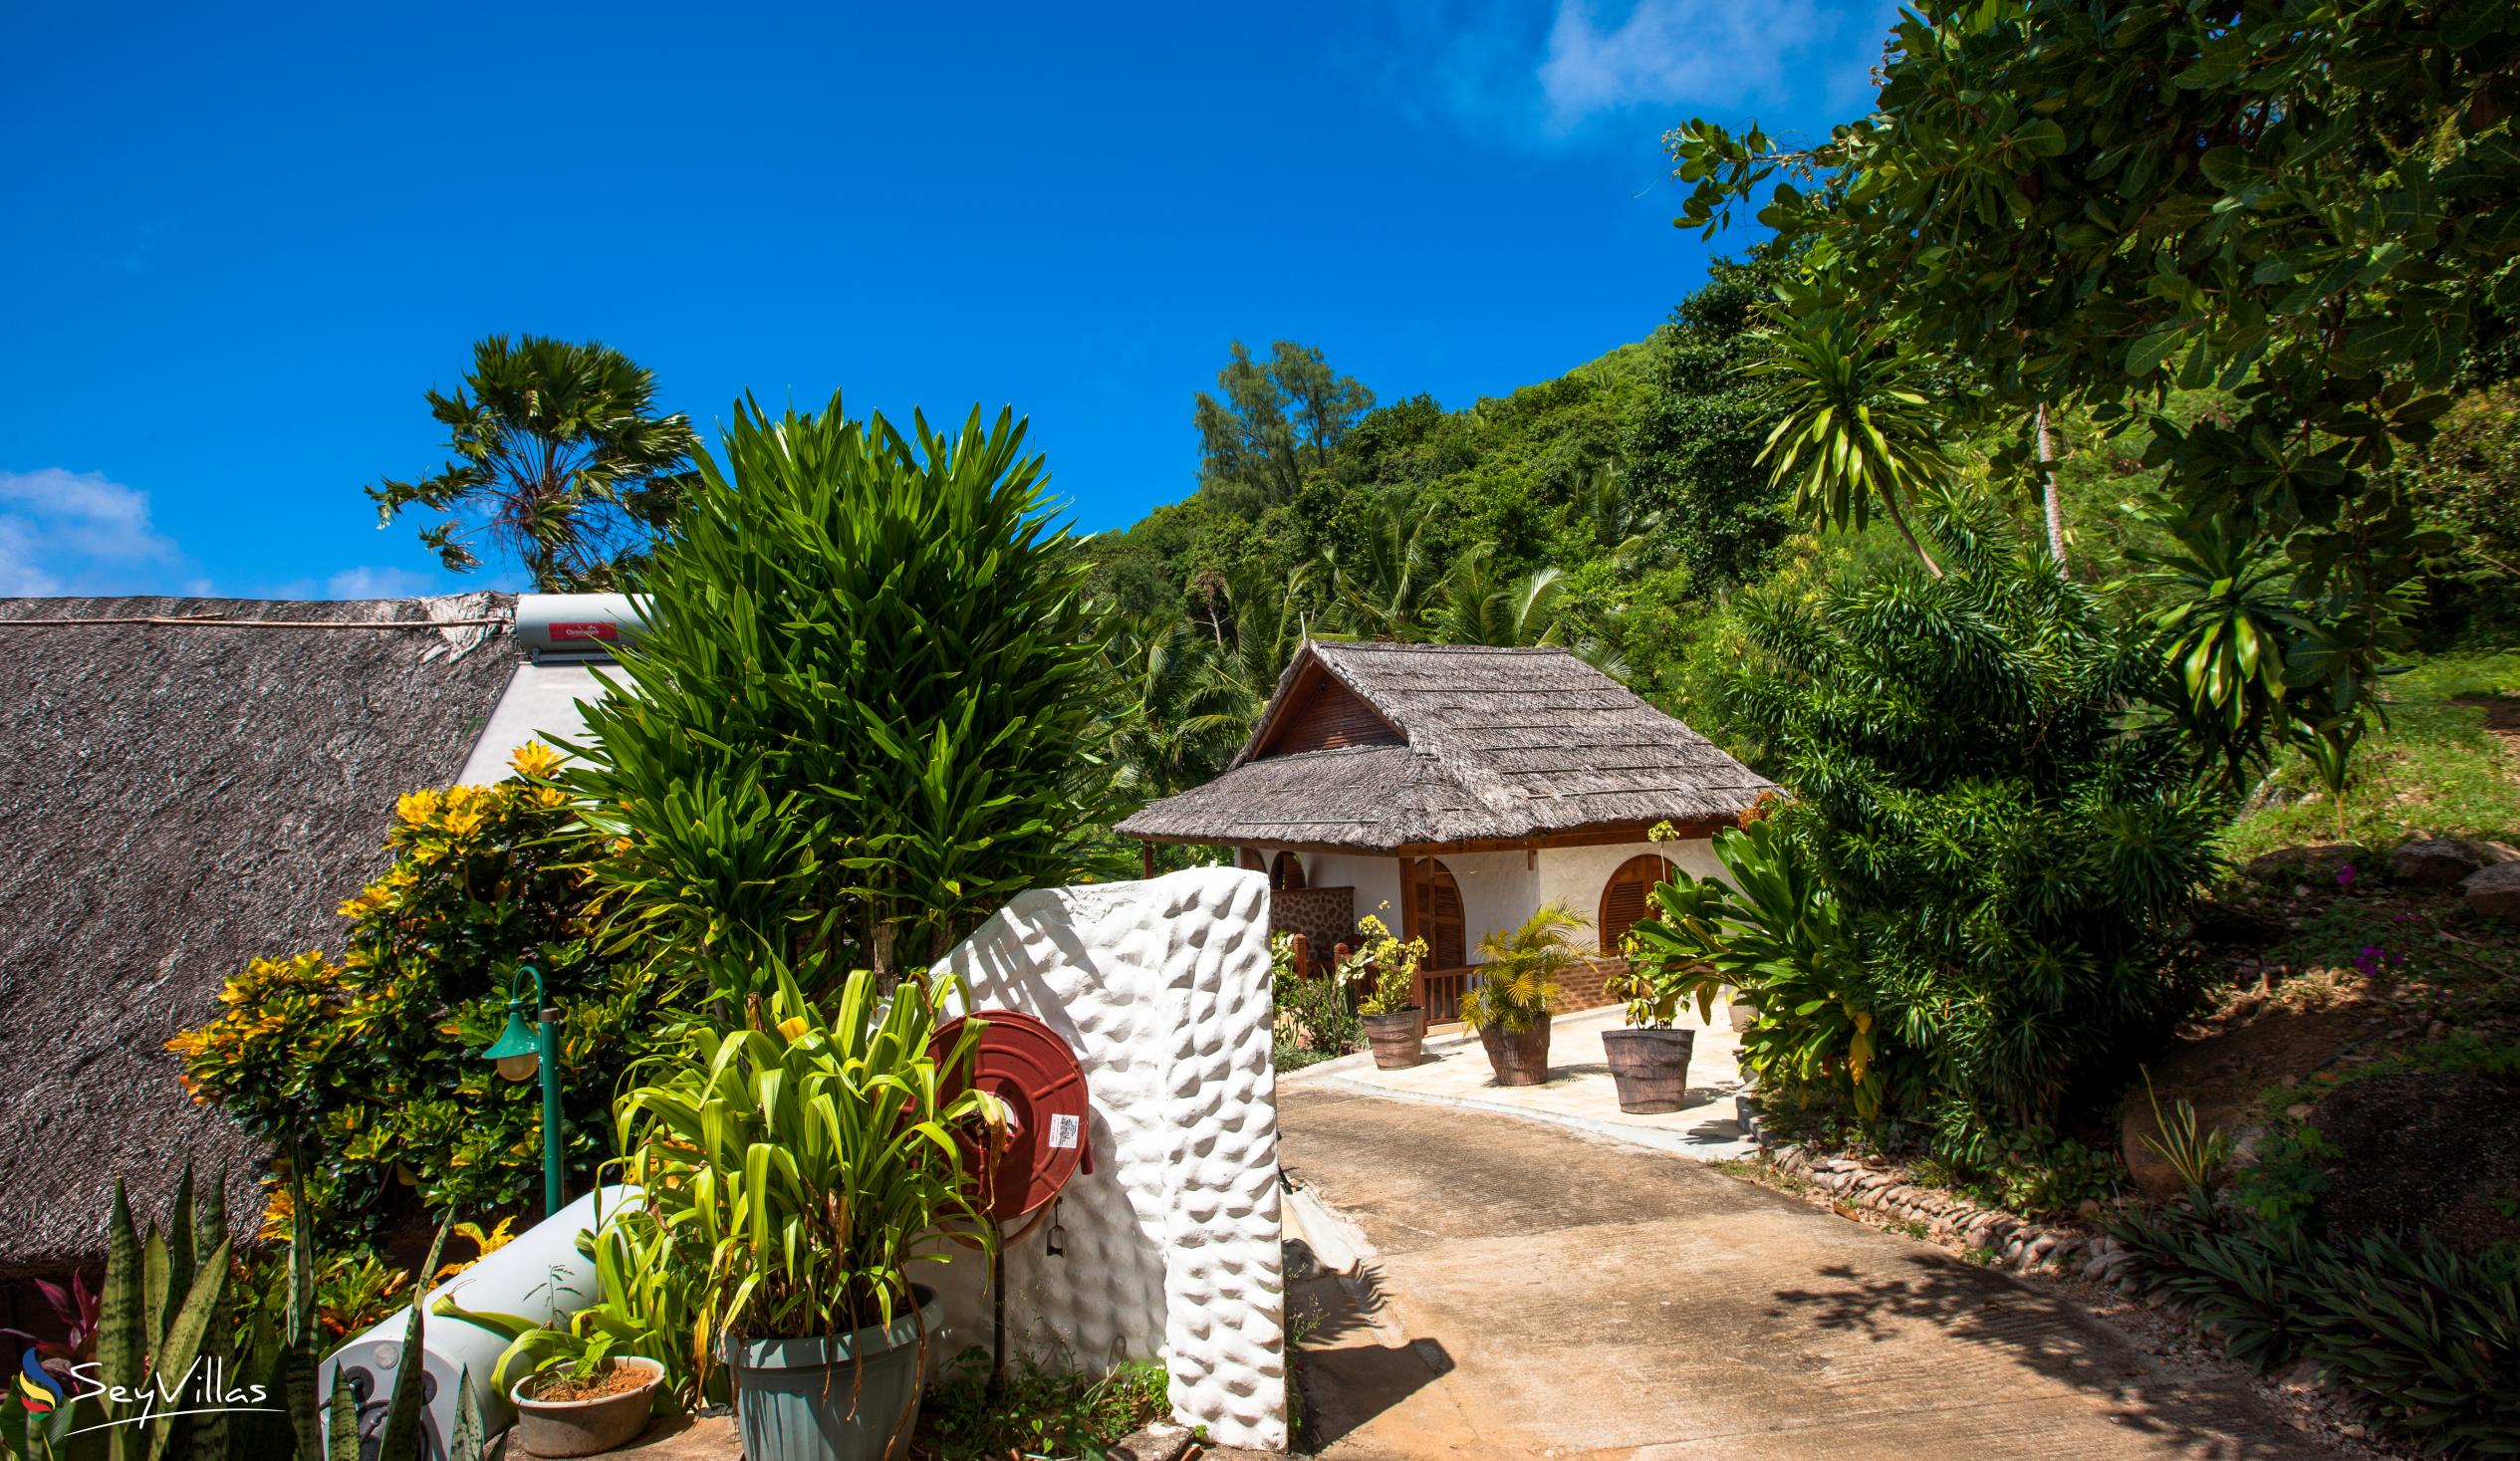 Foto 13: Colibri Guesthouse - Aussenbereich - Praslin (Seychellen)